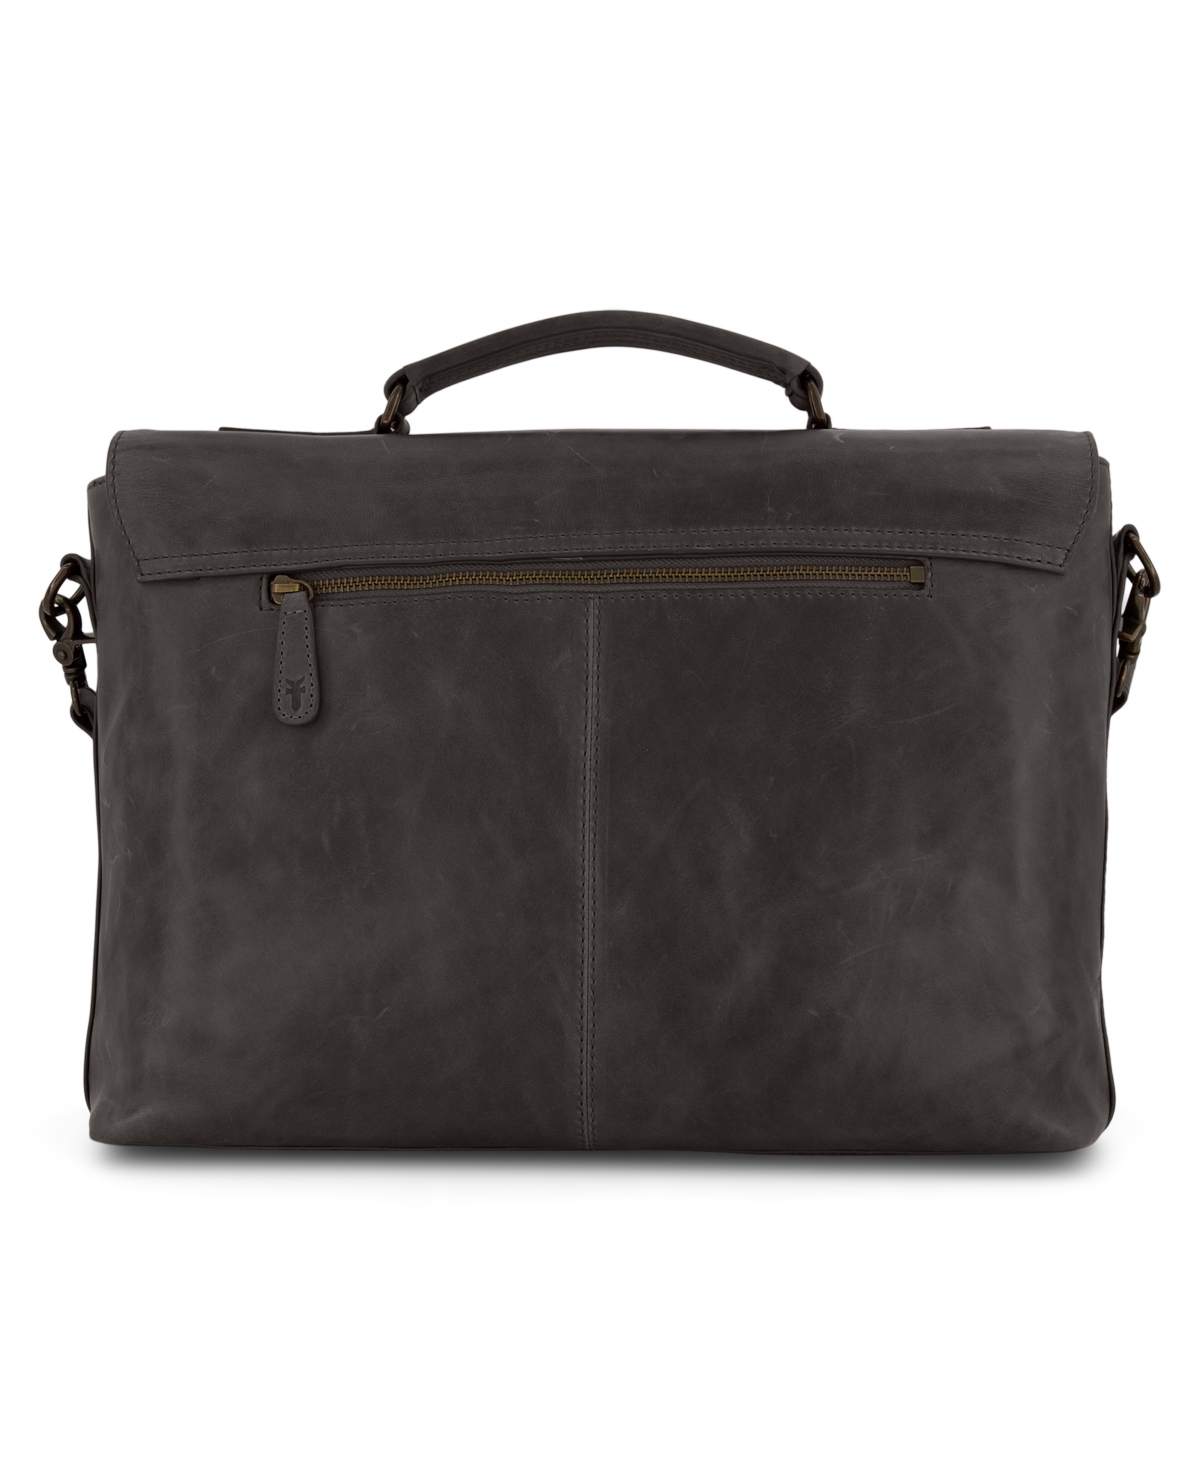 Men's Logan Top Handle Bag - Dark Brown